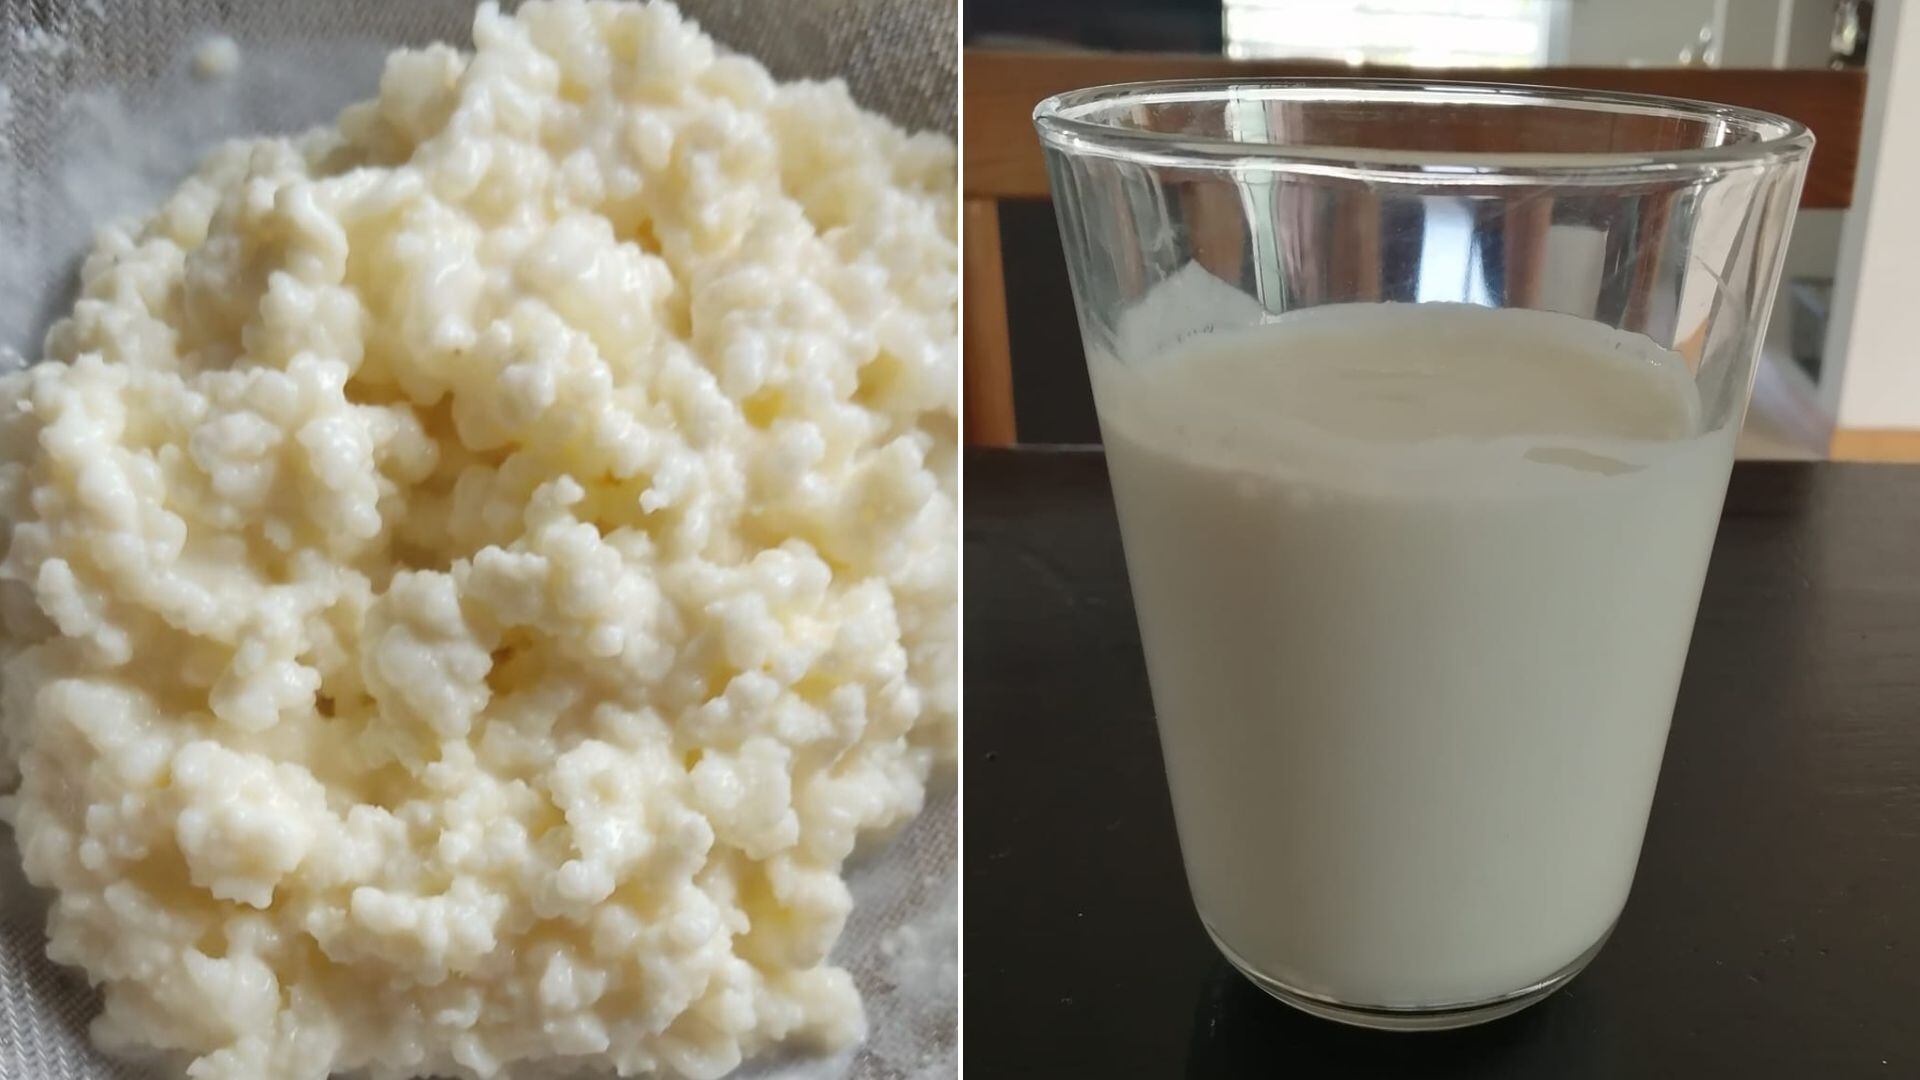 Los búlgaros de leche son muy beneficiosos para la salud. (Facebook: kefir, yogurt, kombucha, recetas y mucho más)